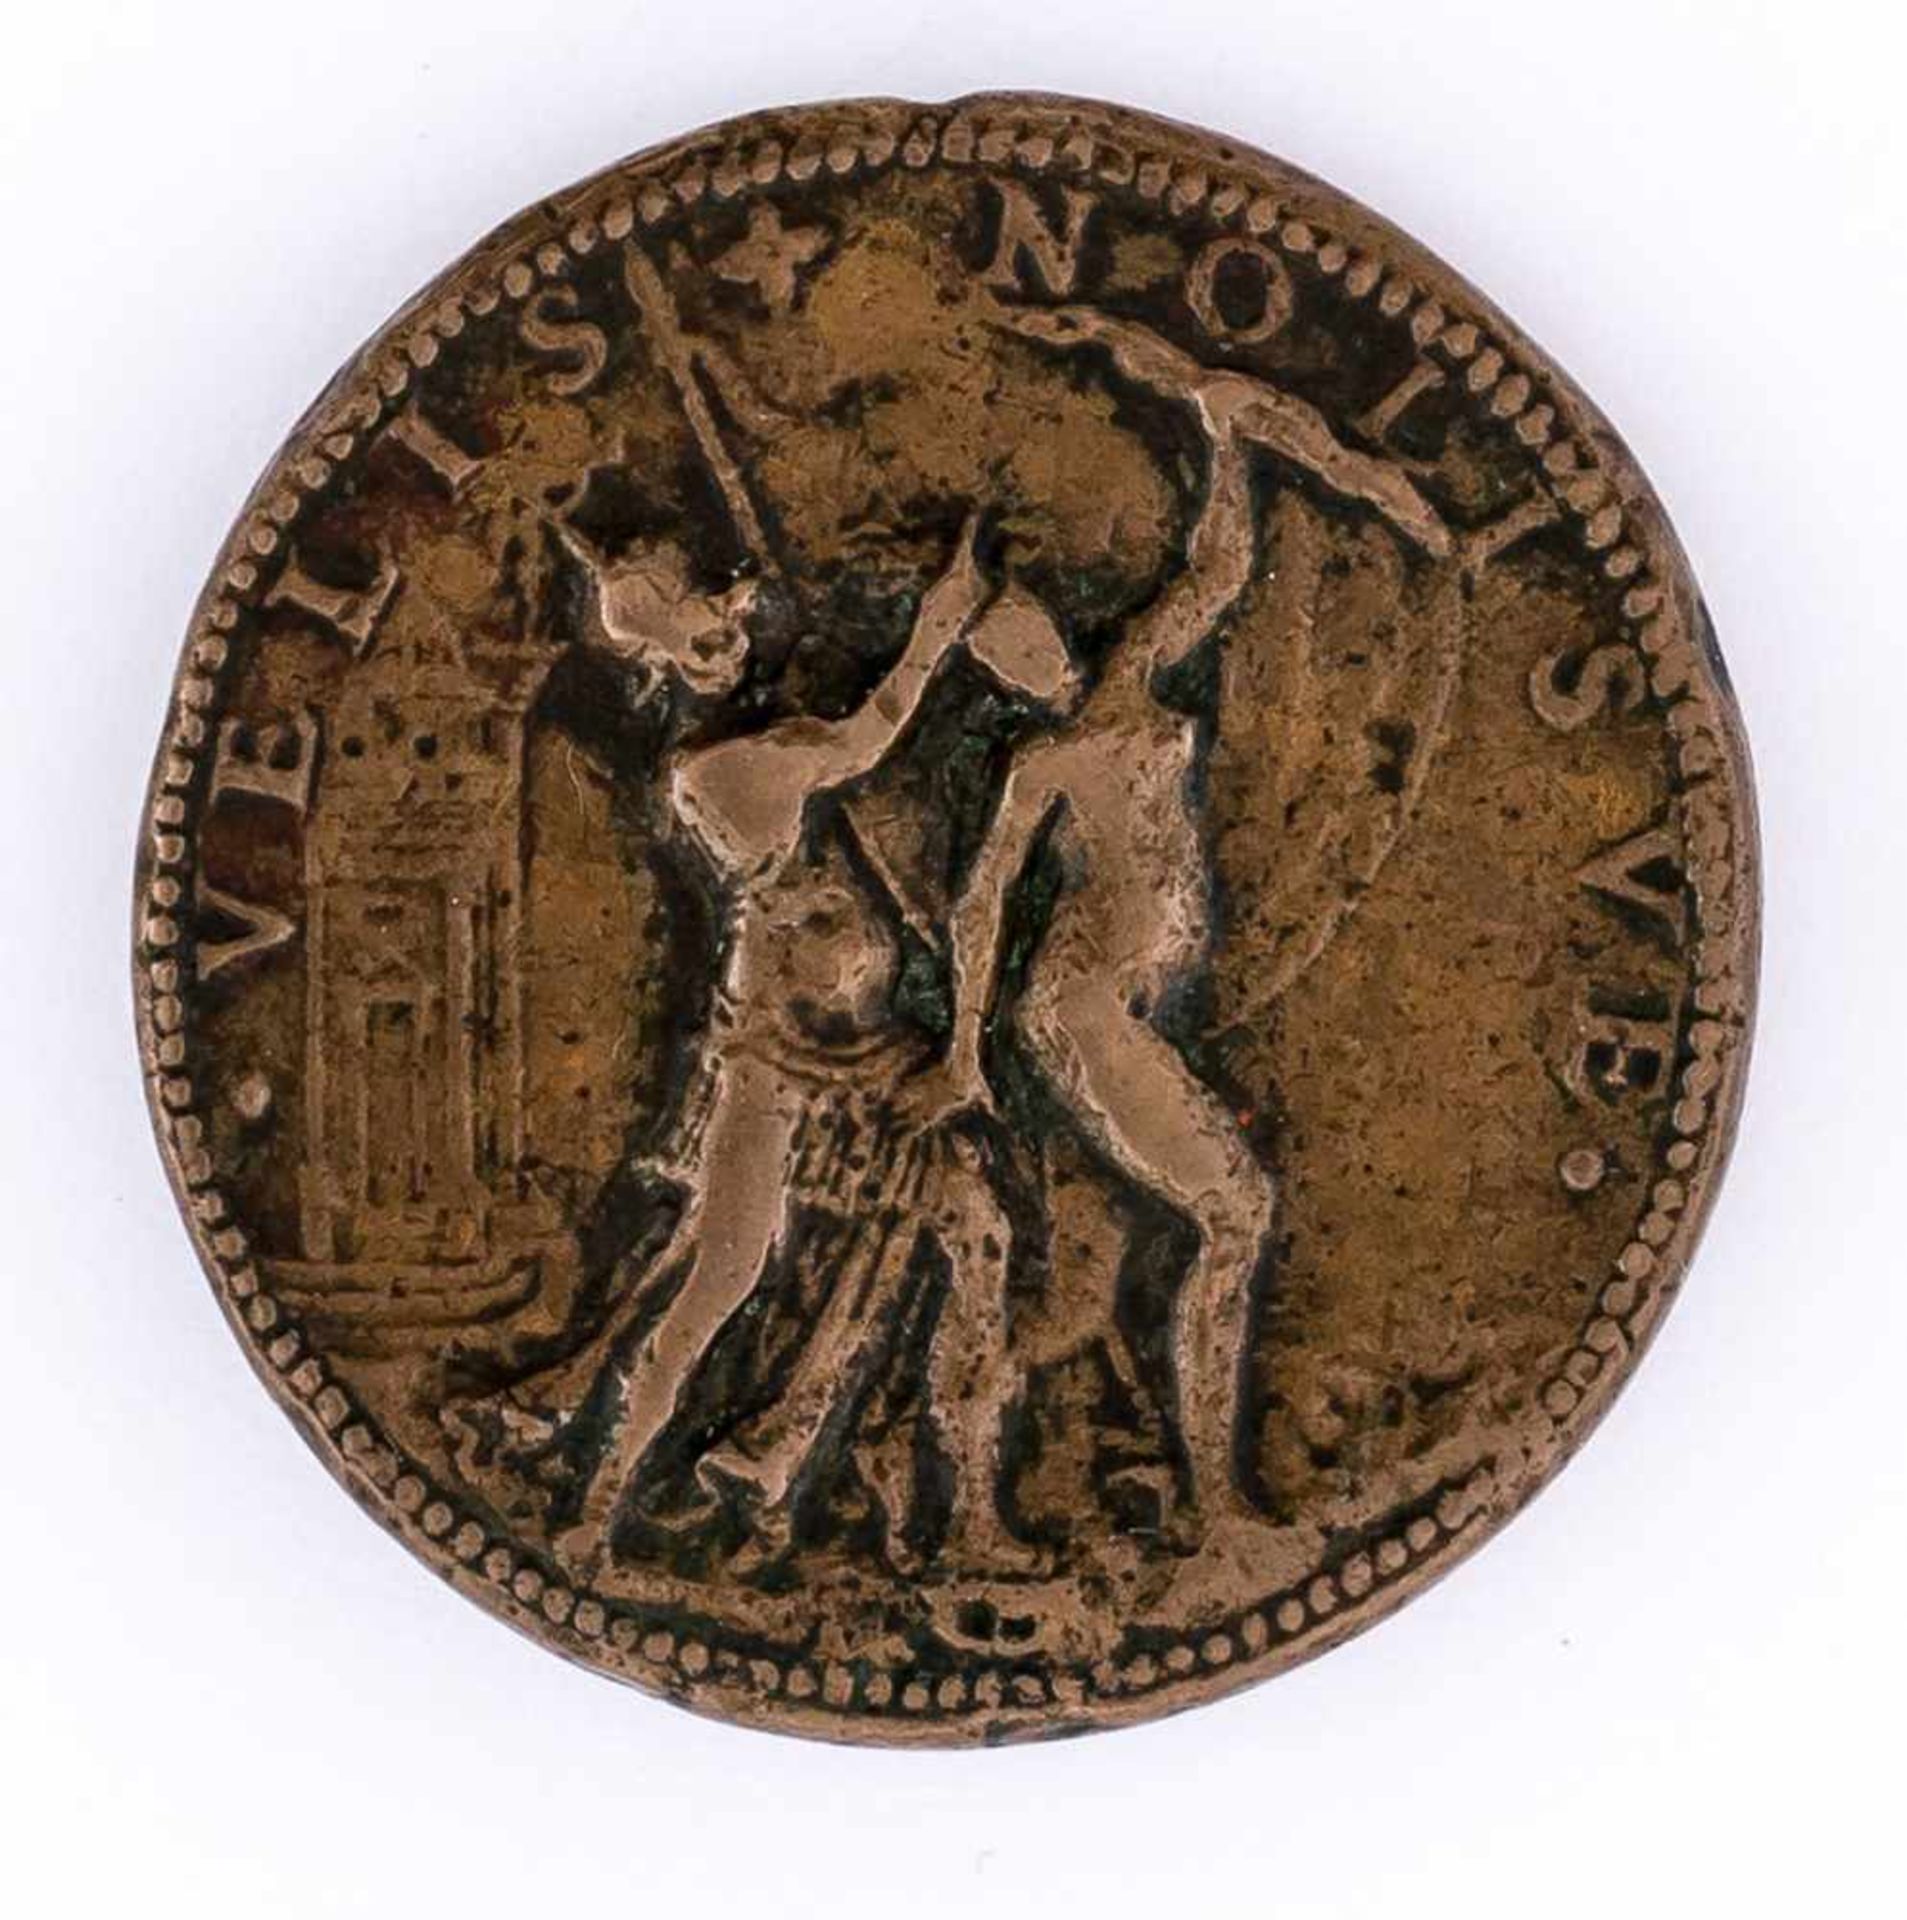 Camillo Agrippa Italienische Medaille von G.B. Bonini (aktiv 1557-1585), wohl um 1585 Durchmesser - Image 2 of 2